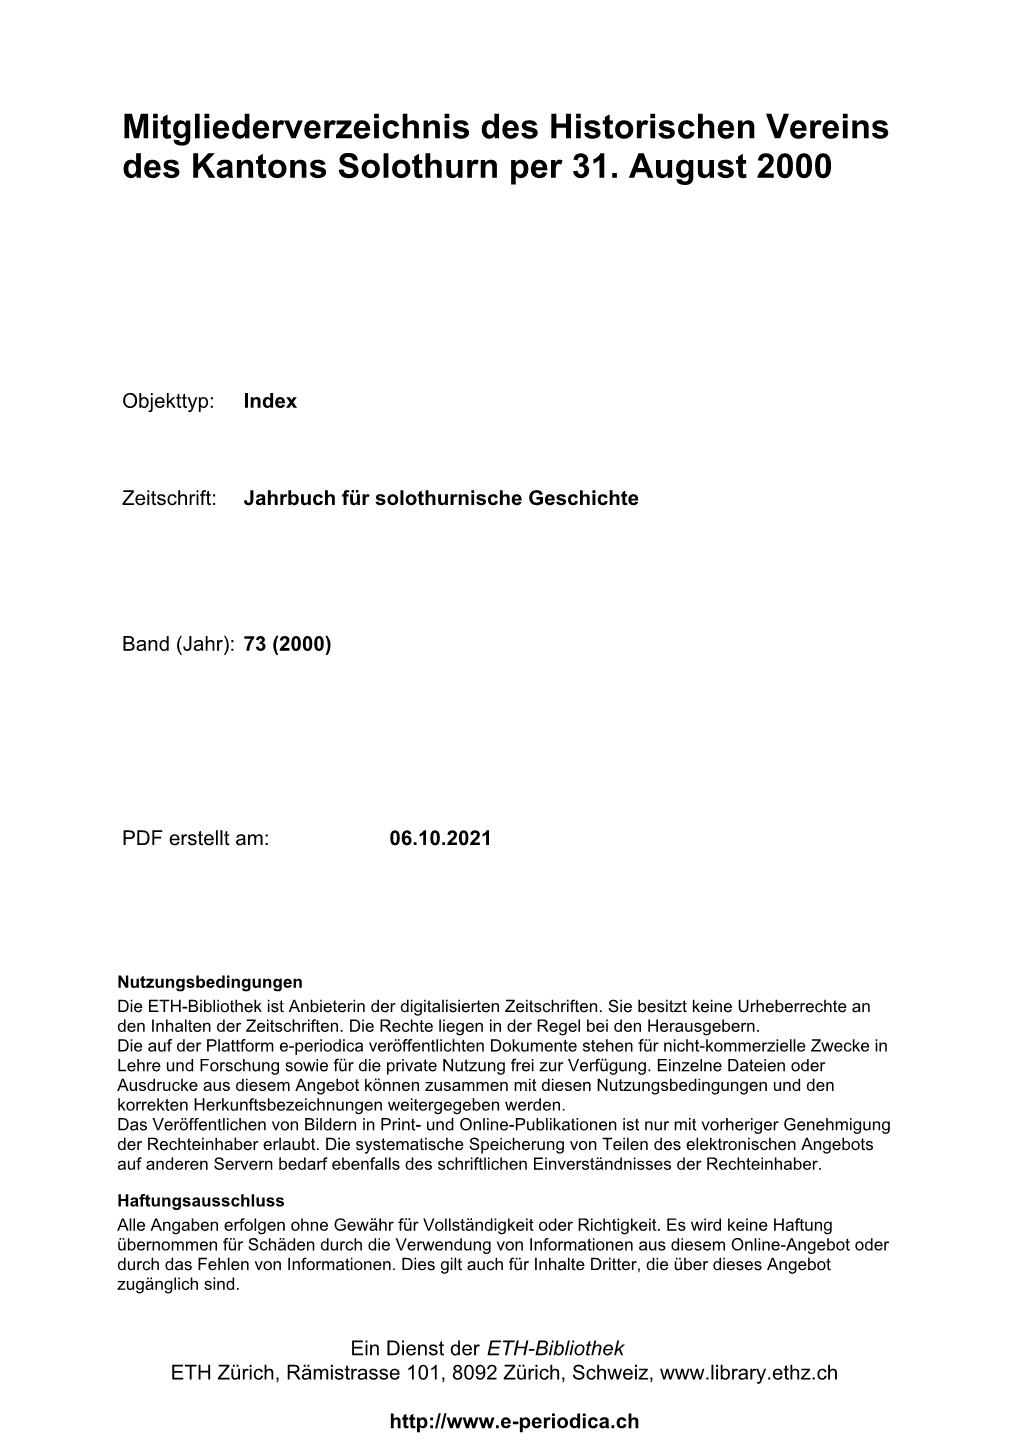 Mitgliederverzeichnis Des Historischen Vereins Des Kantons Solothurn Per 31